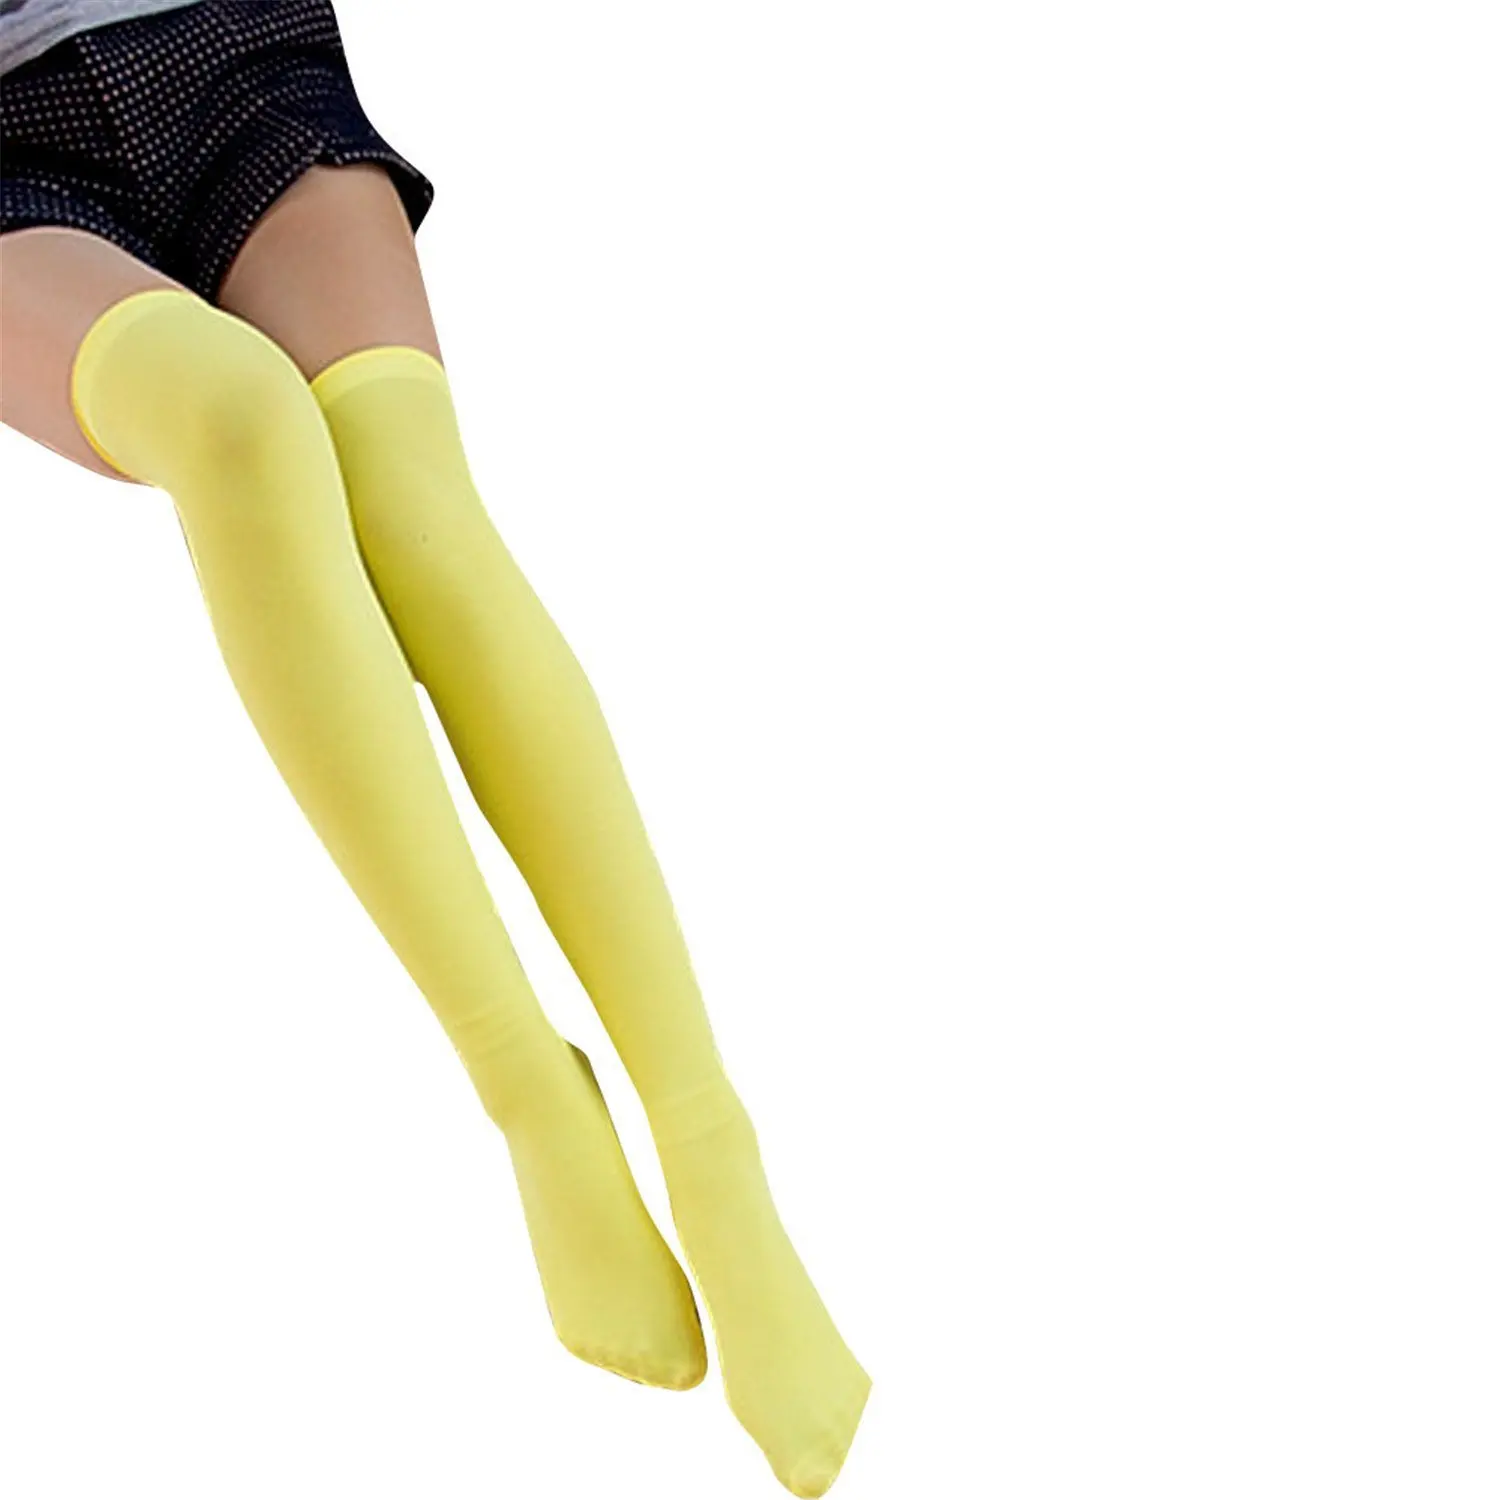 Cheap Non Stretch Nylon Stockings, find Non Stretch Nylon Stockings ...